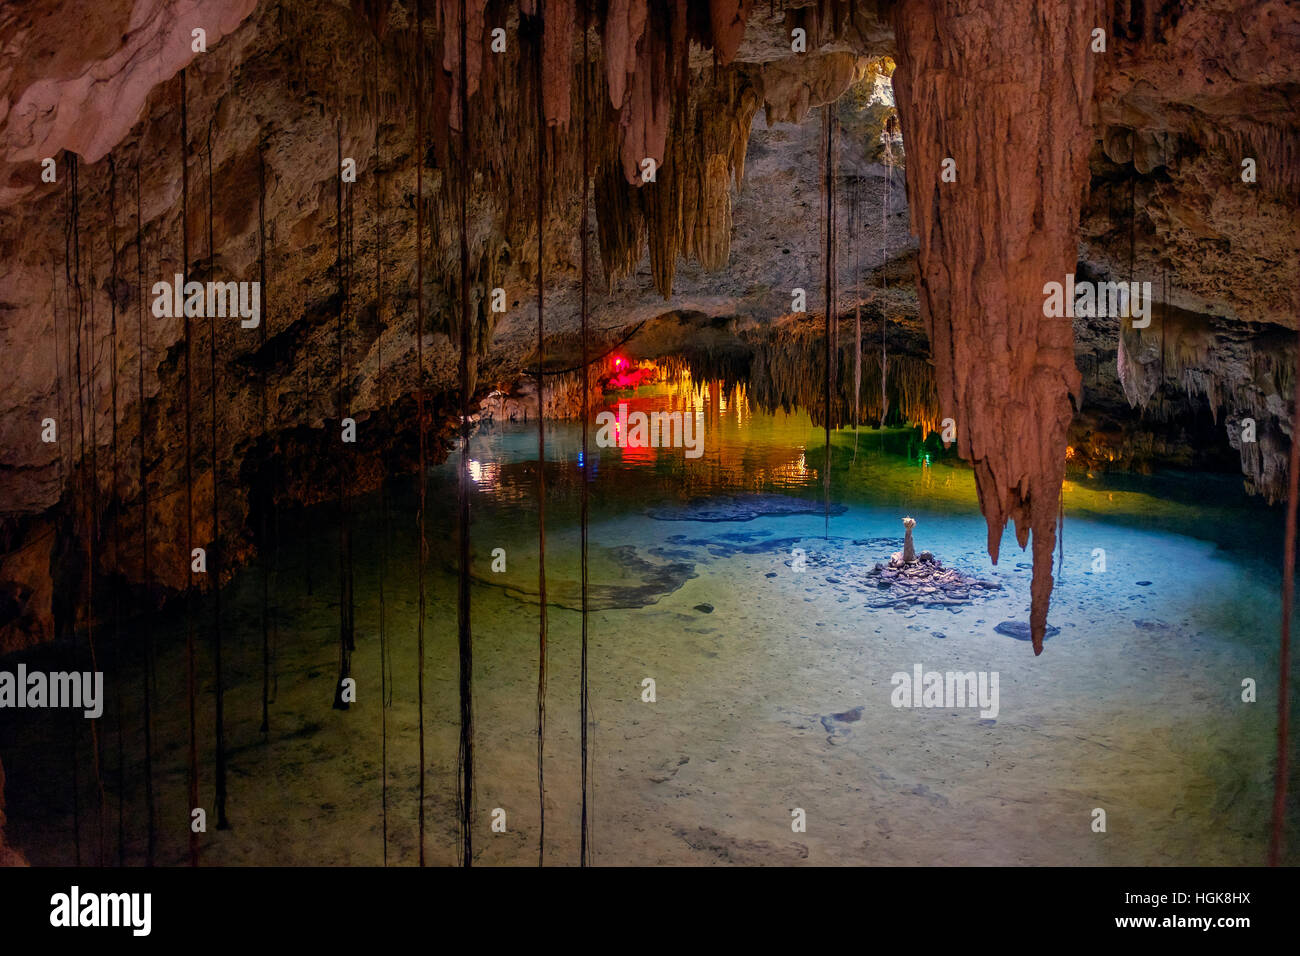 Mexican Cénote, appelé Tak être Ha, montrant la rivière souterraine, les stalagmites et stalactites. Province du Yucatan, Mexique Banque D'Images